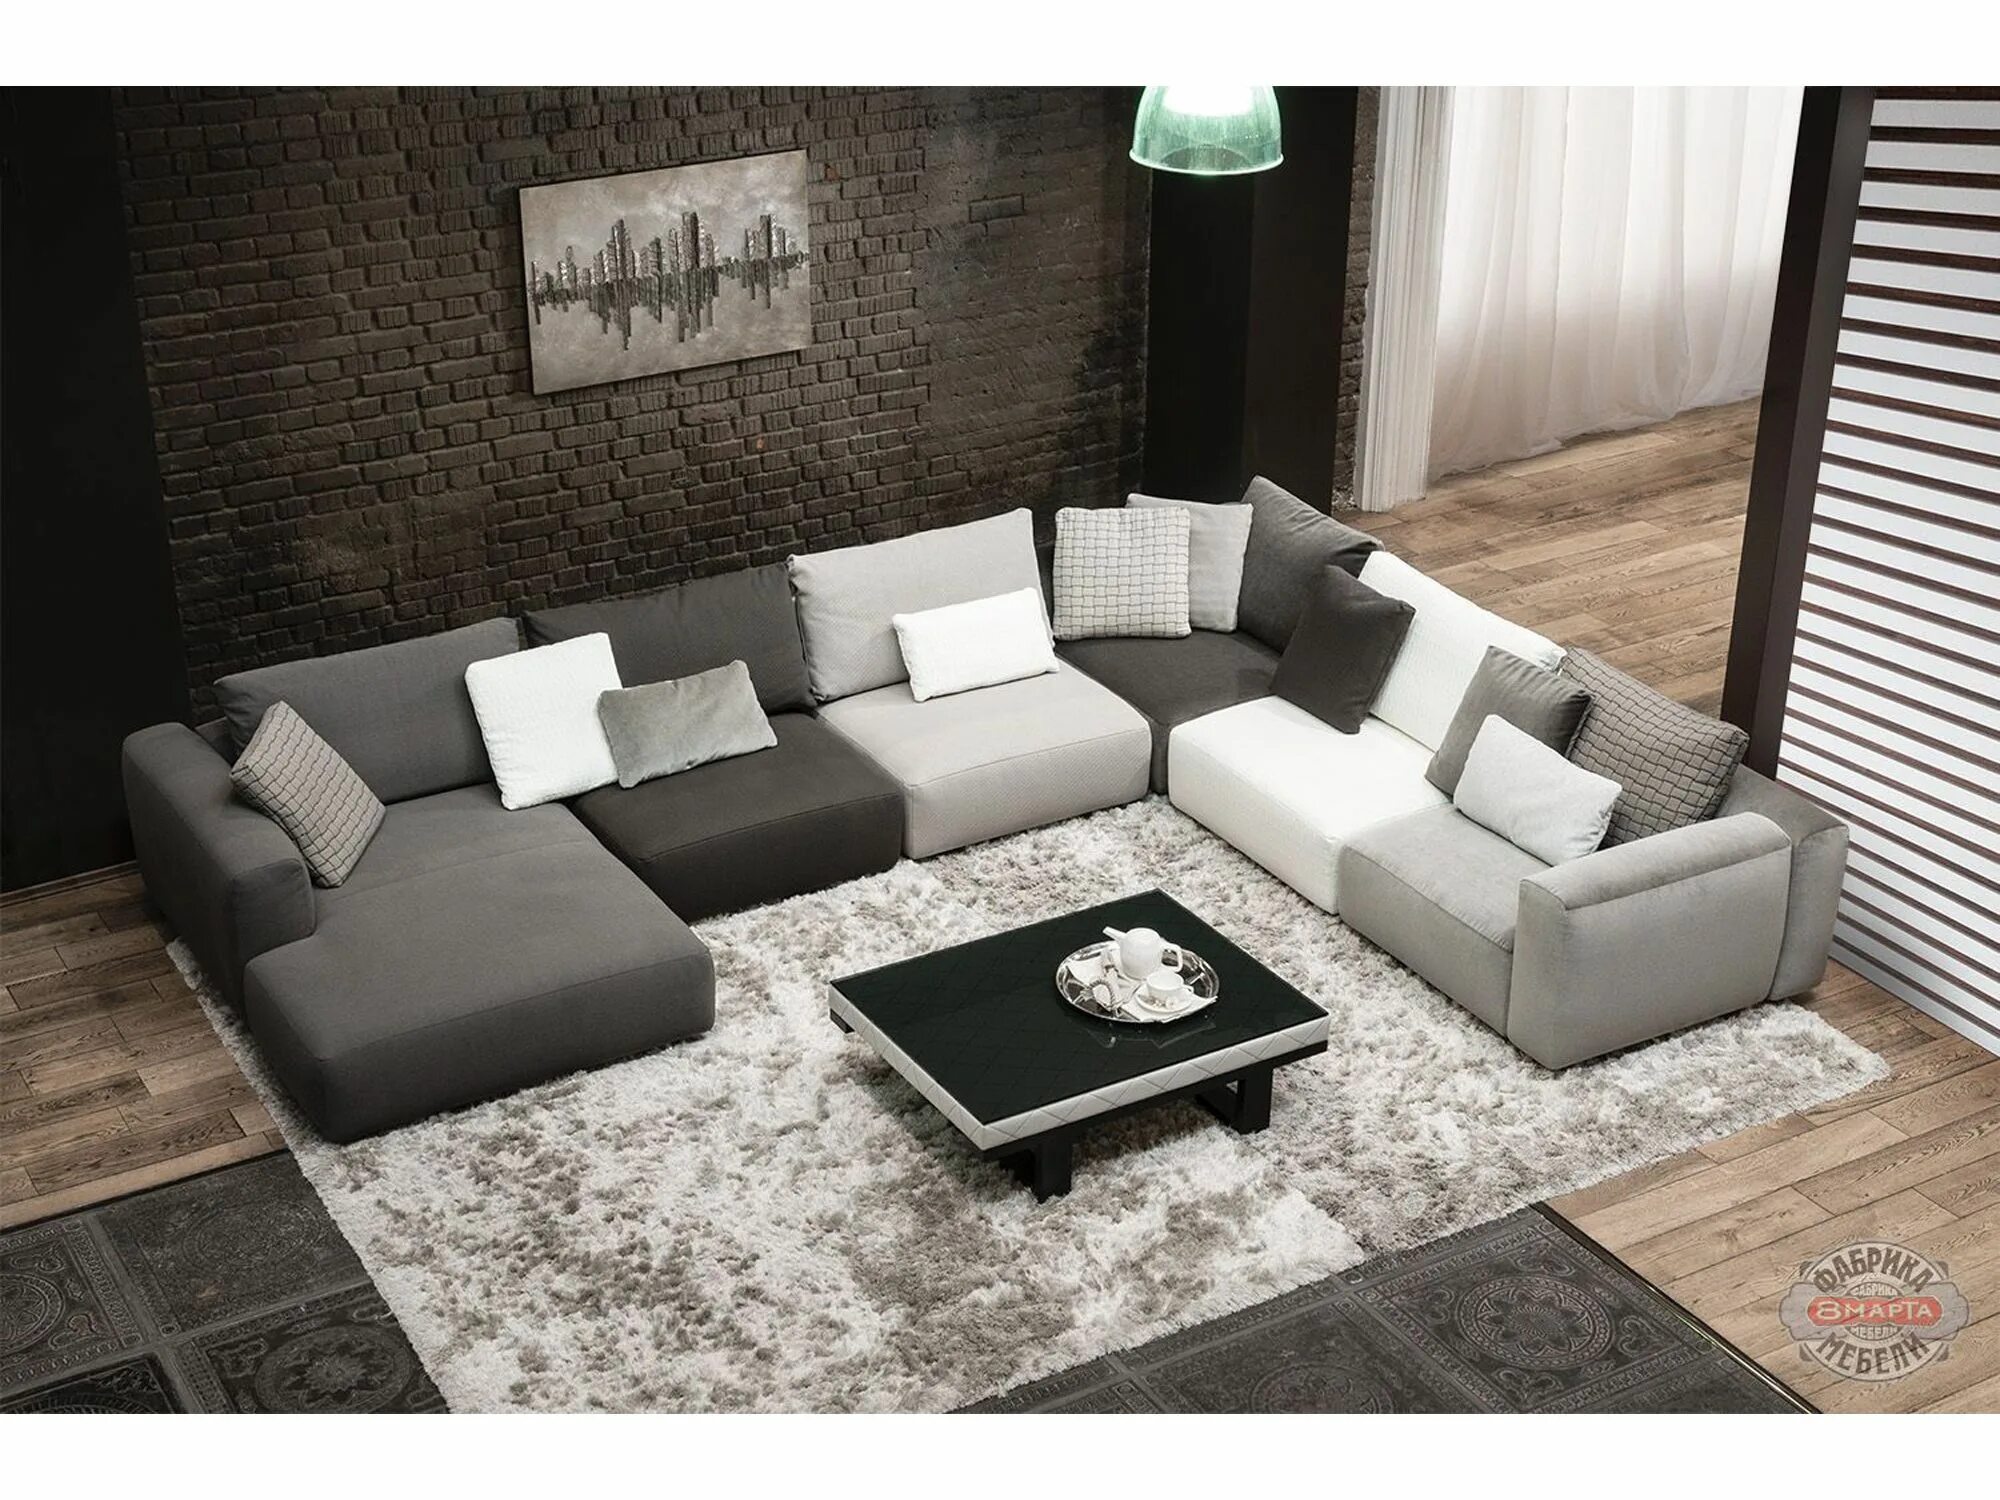 Большие диваны фото. Модульный диван Мортимер. Модульный диван 3ддд. Большой модульный диван для гостиной. Модульный диван в интерьере.